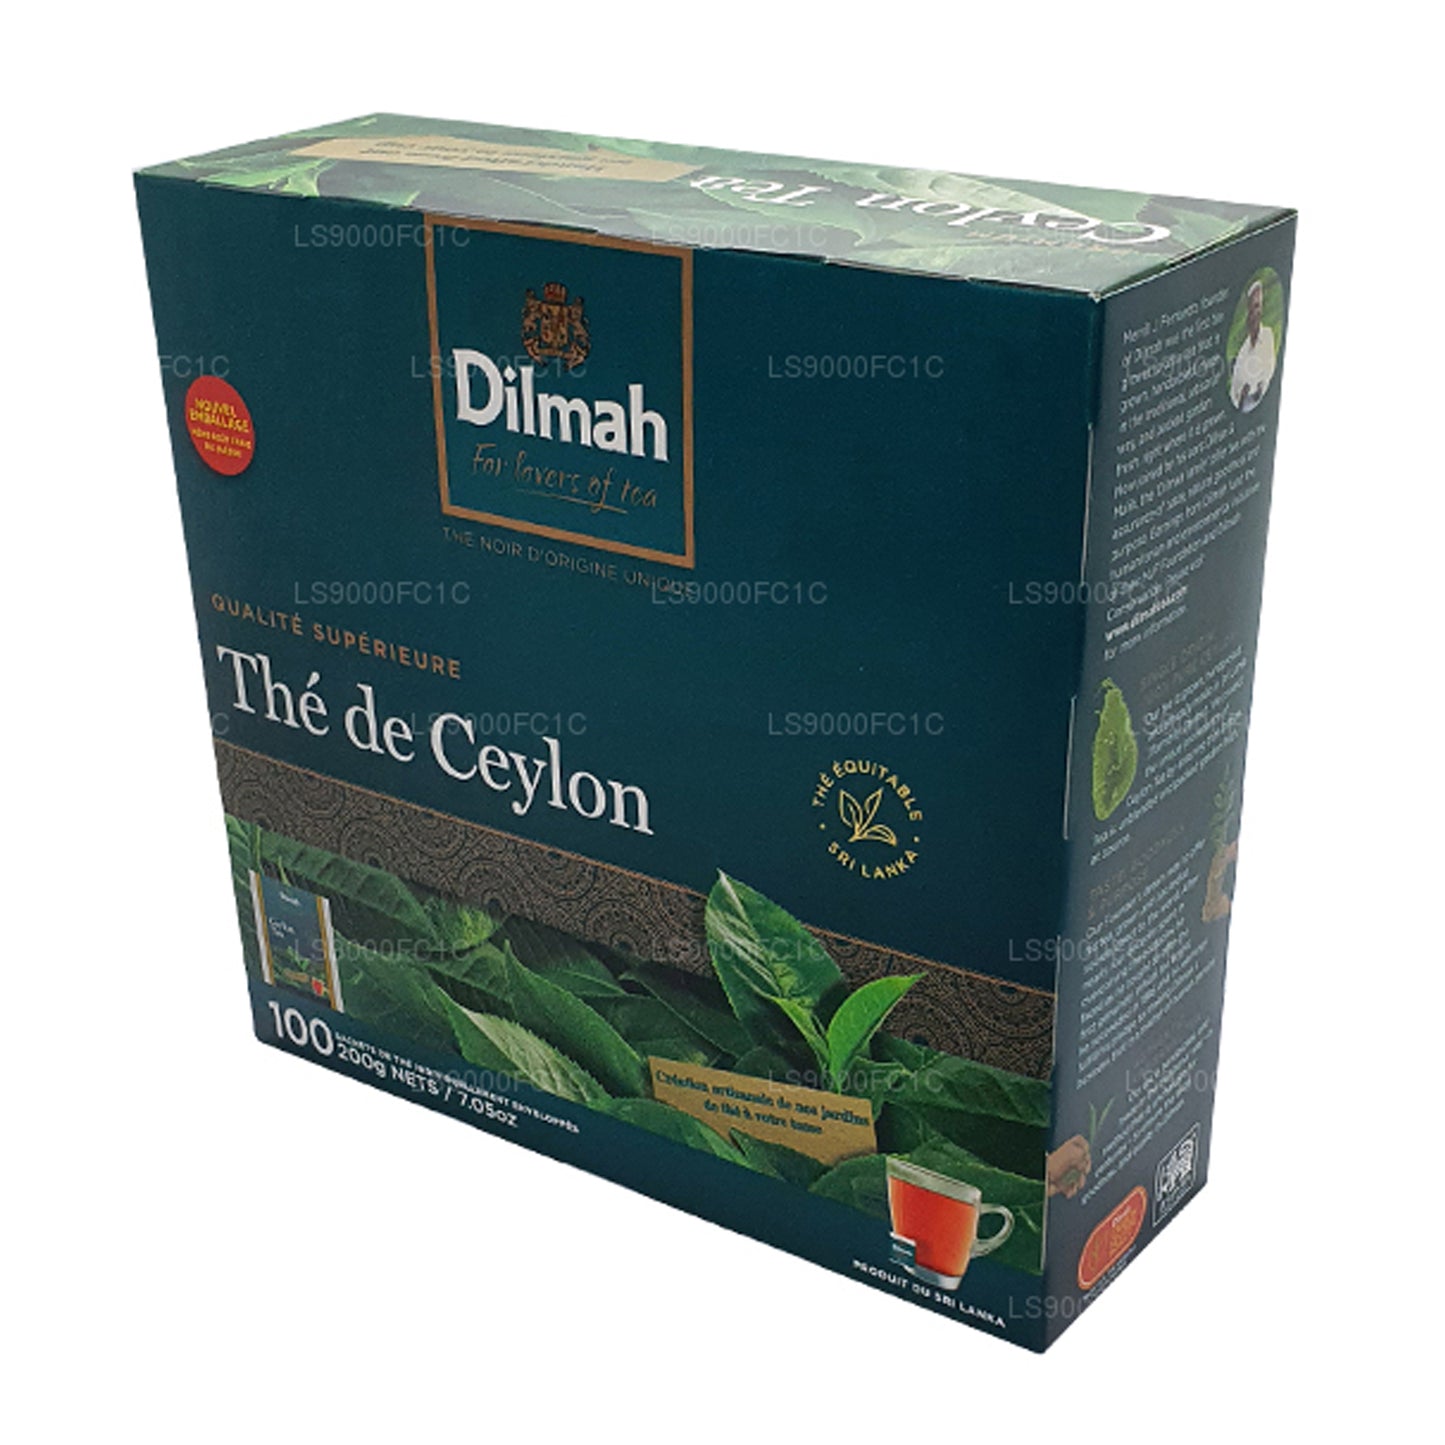 Tè Ceylon Dilmah Premium, confezionato singolarmente, 100 bustine di tè (200 g)